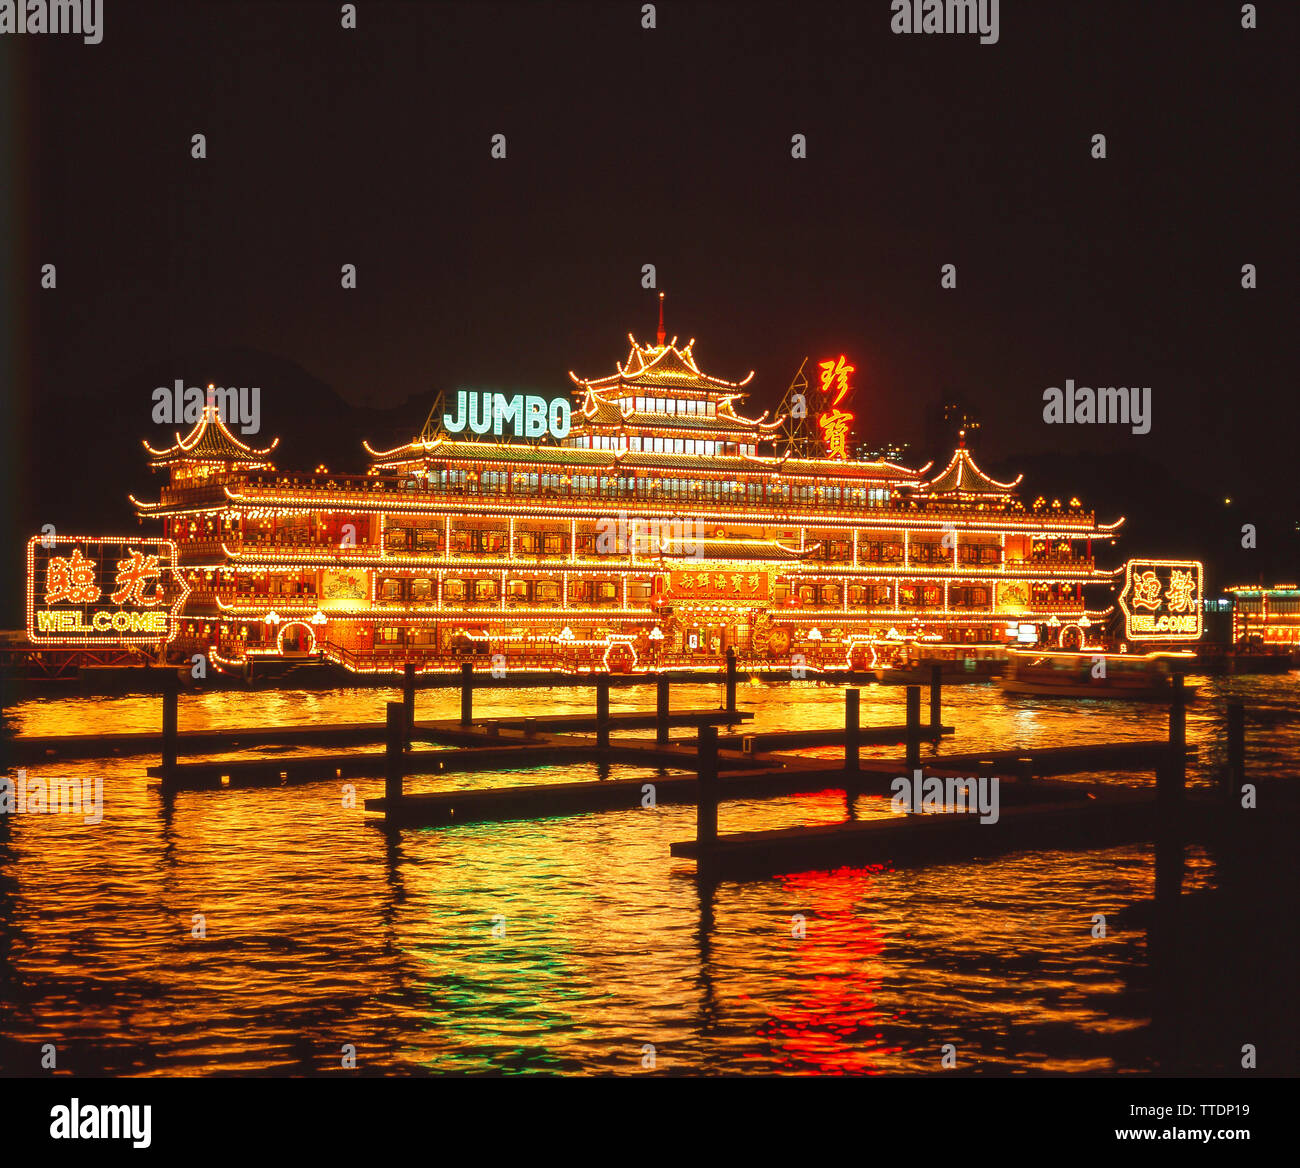 Flottant "Jumbo" restaurant chinois dans la nuit, le port d'Aberdeen, Hong Kong, République populaire de Chine Banque D'Images